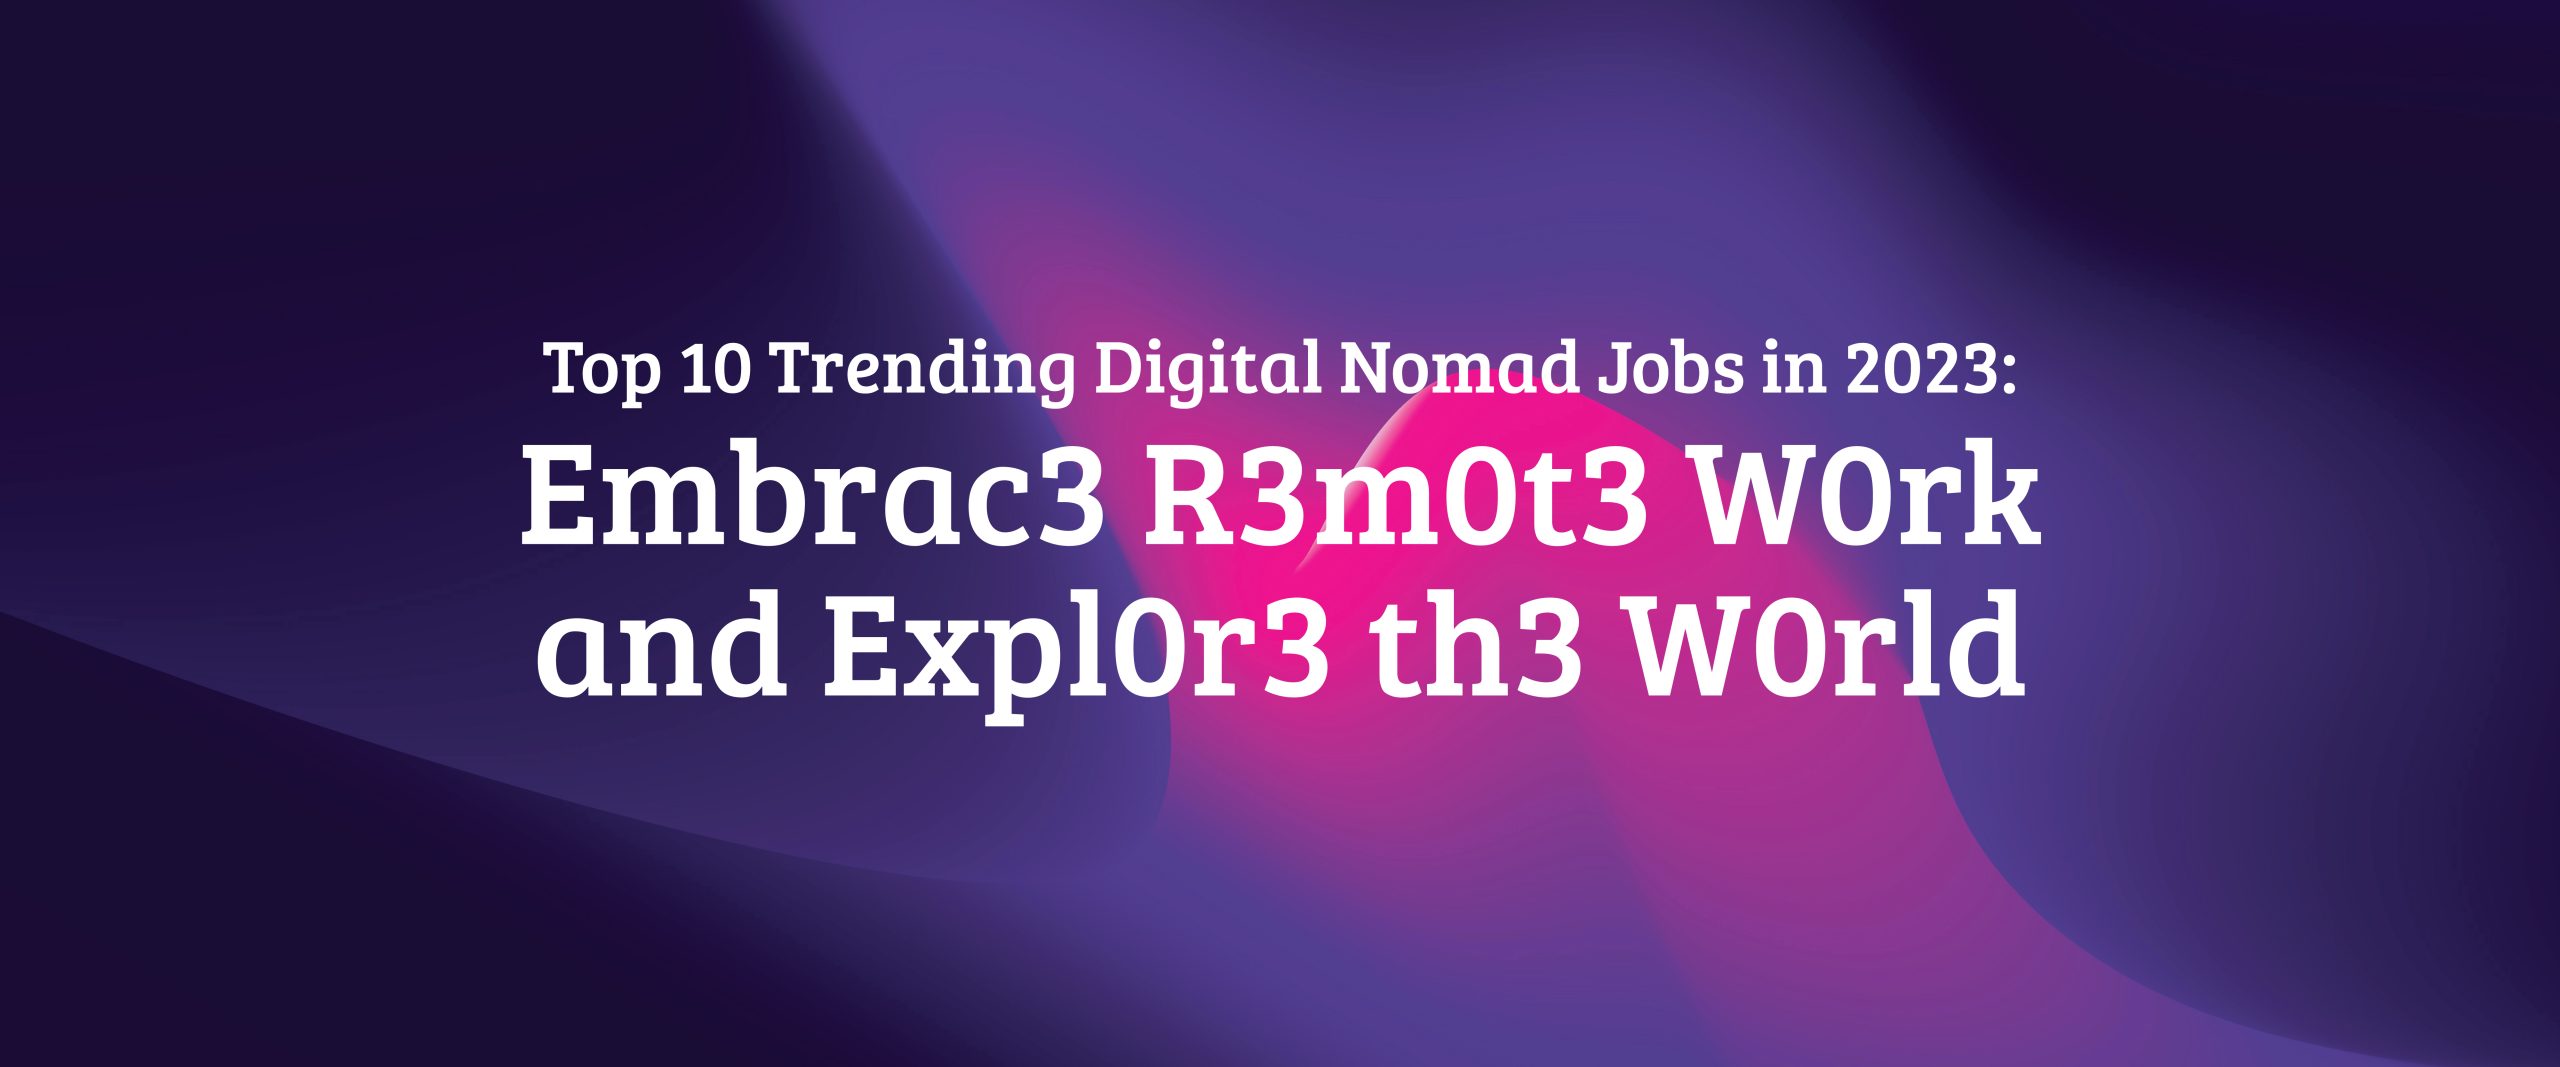 Top 10 Trending Digital Nomad Jobs